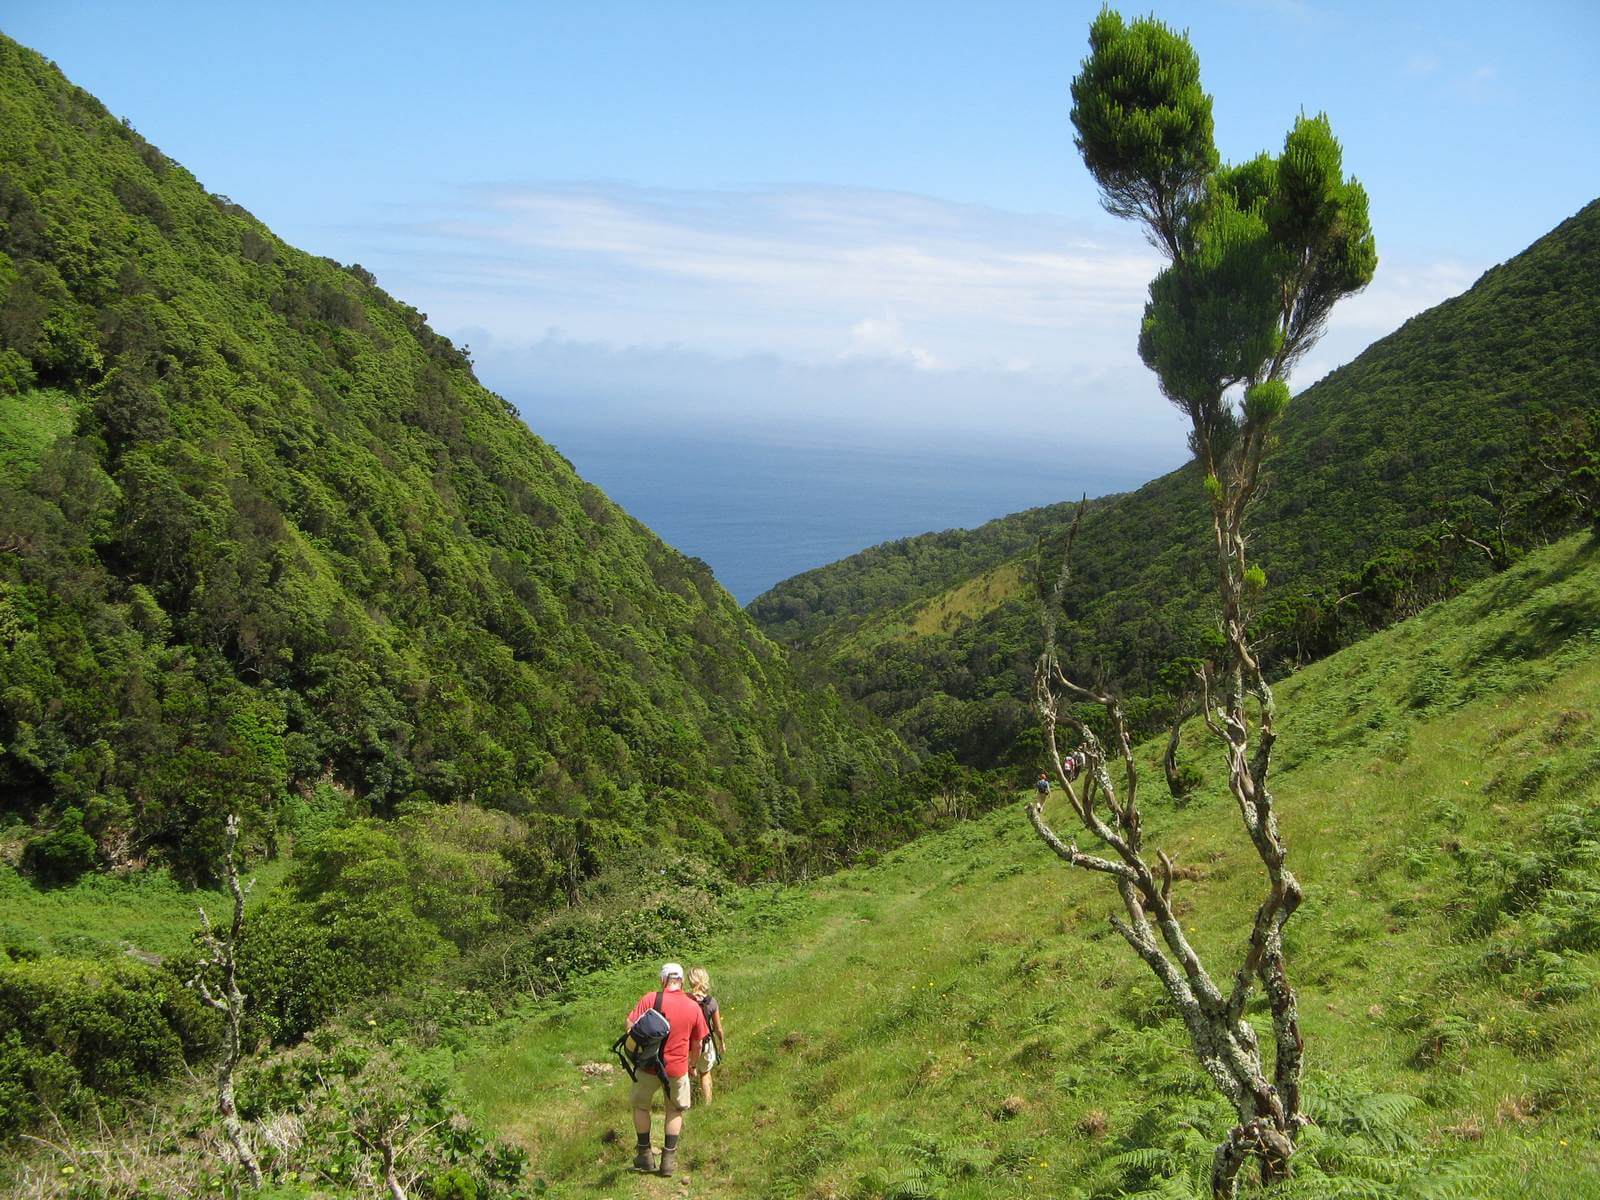 Foto: Wanderung hinunter zur Kste auf den Azoren - Lupe Reisen